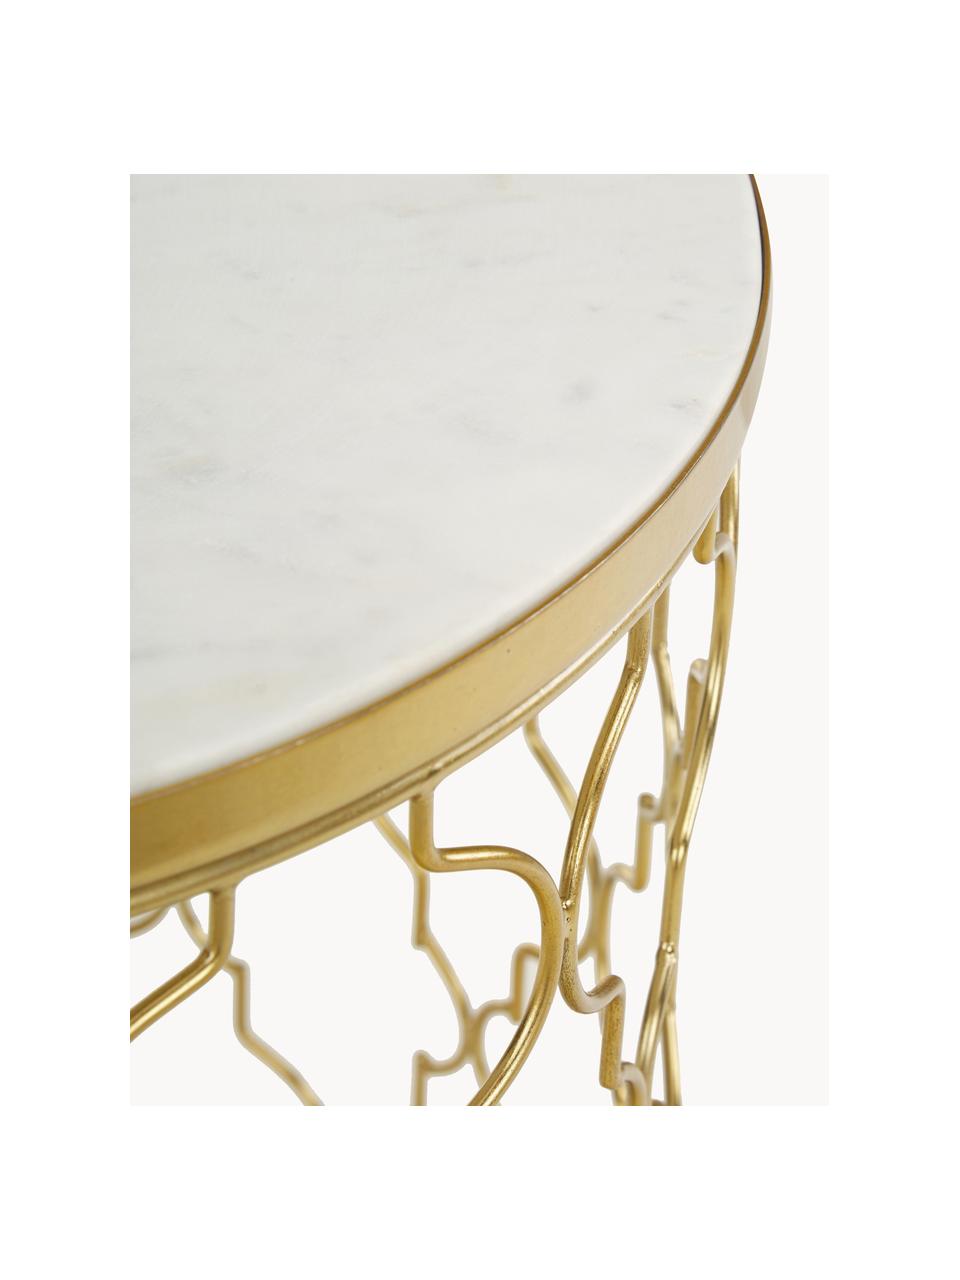 Marmor-Beistelltische Blake, 2er-Set, Weiß, marmoriert, Goldfarben, Set mit verschiedenen Größen